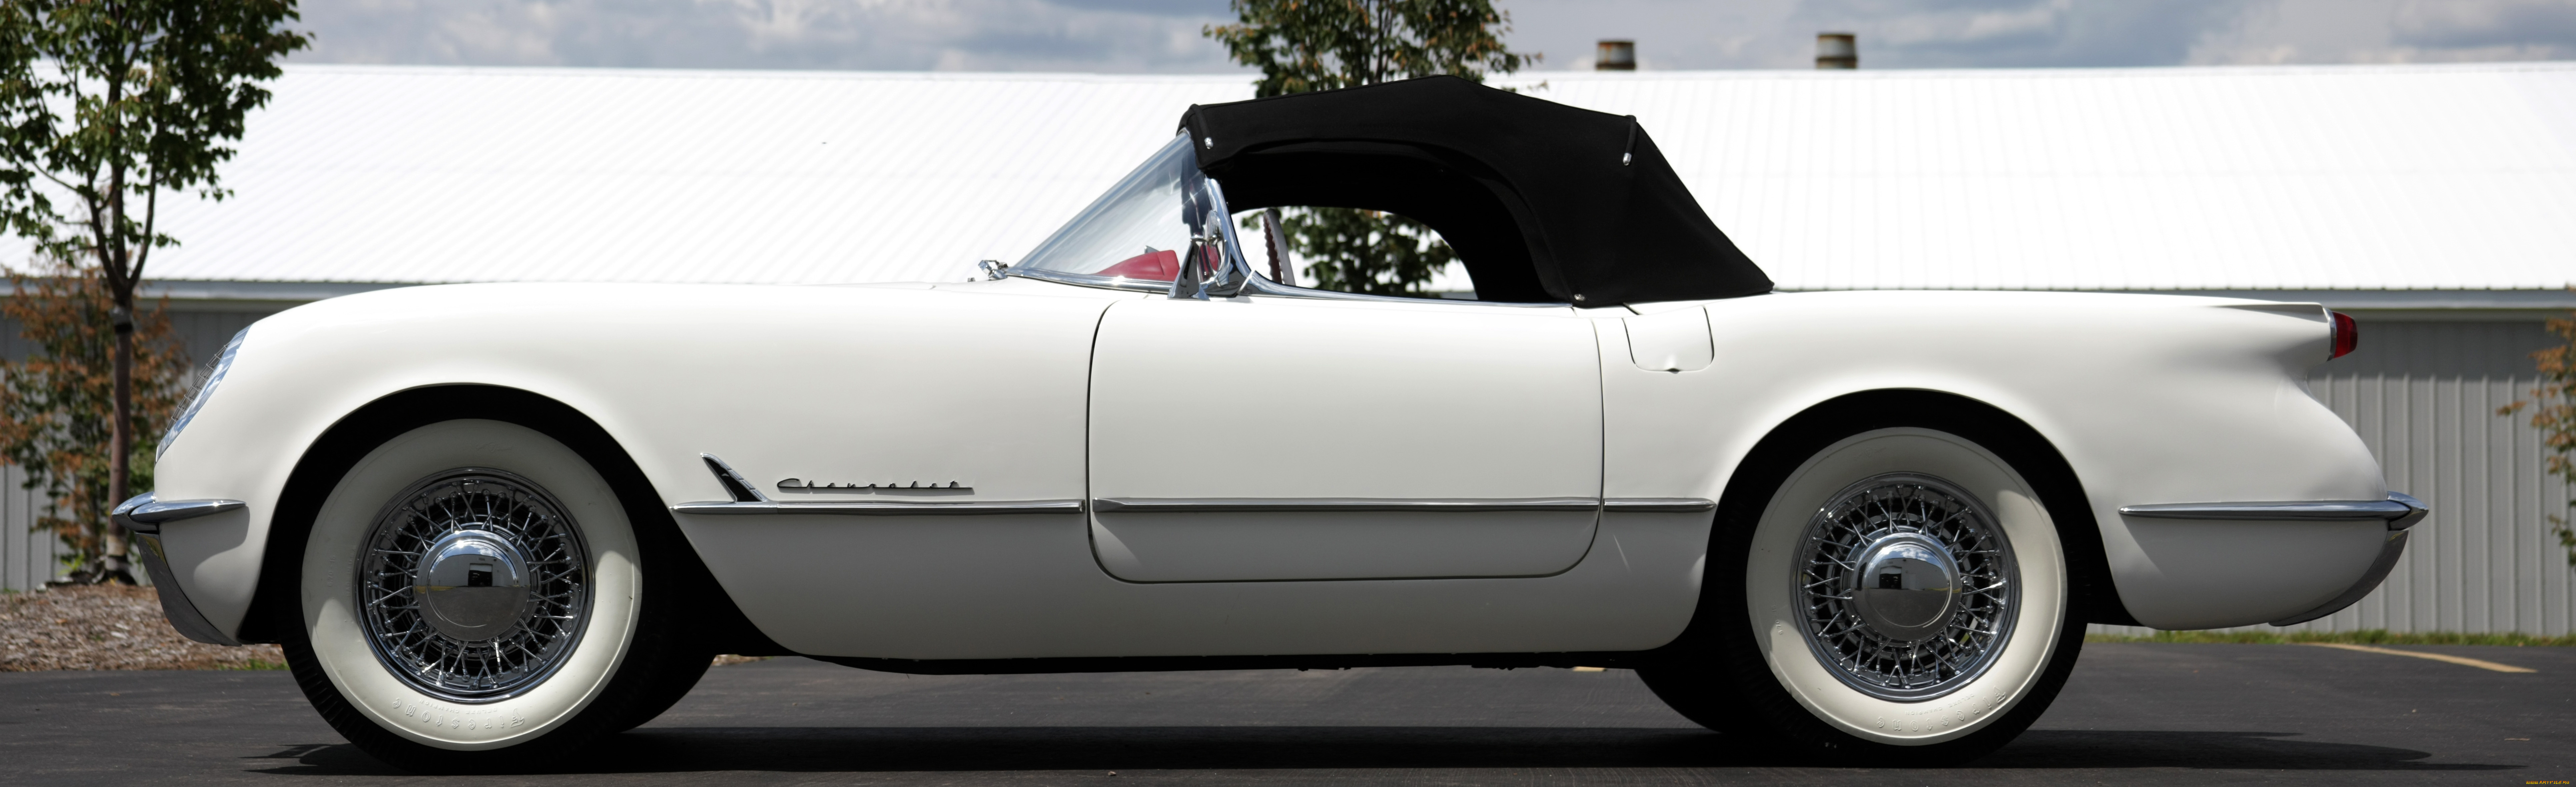 1953, supercharged, corvette, автомобили, модель, спортивная, авто